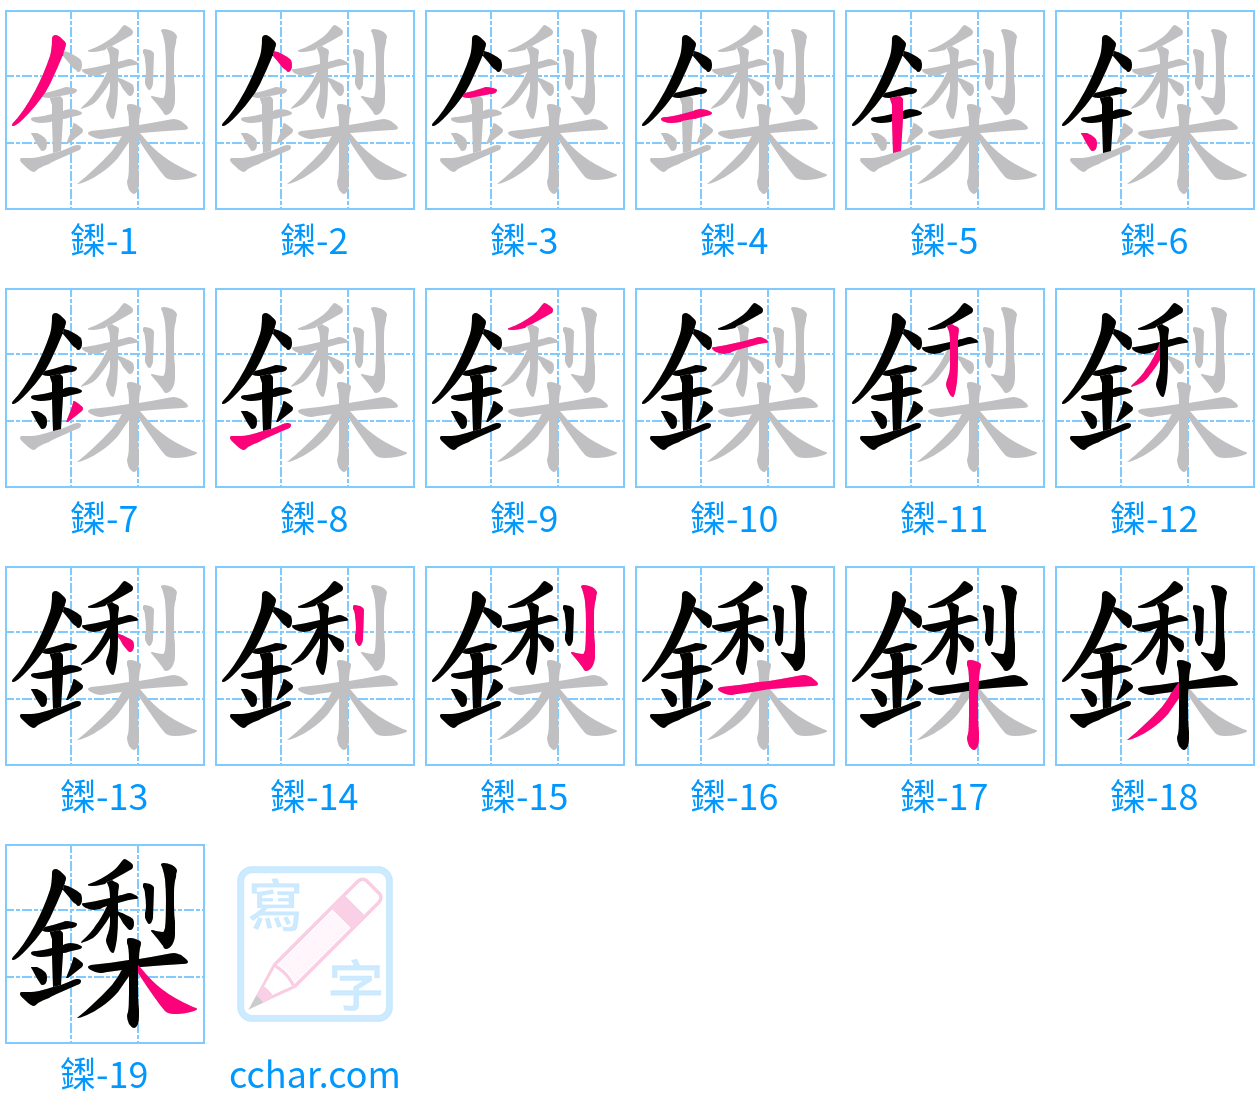 鏫 stroke order step-by-step diagram